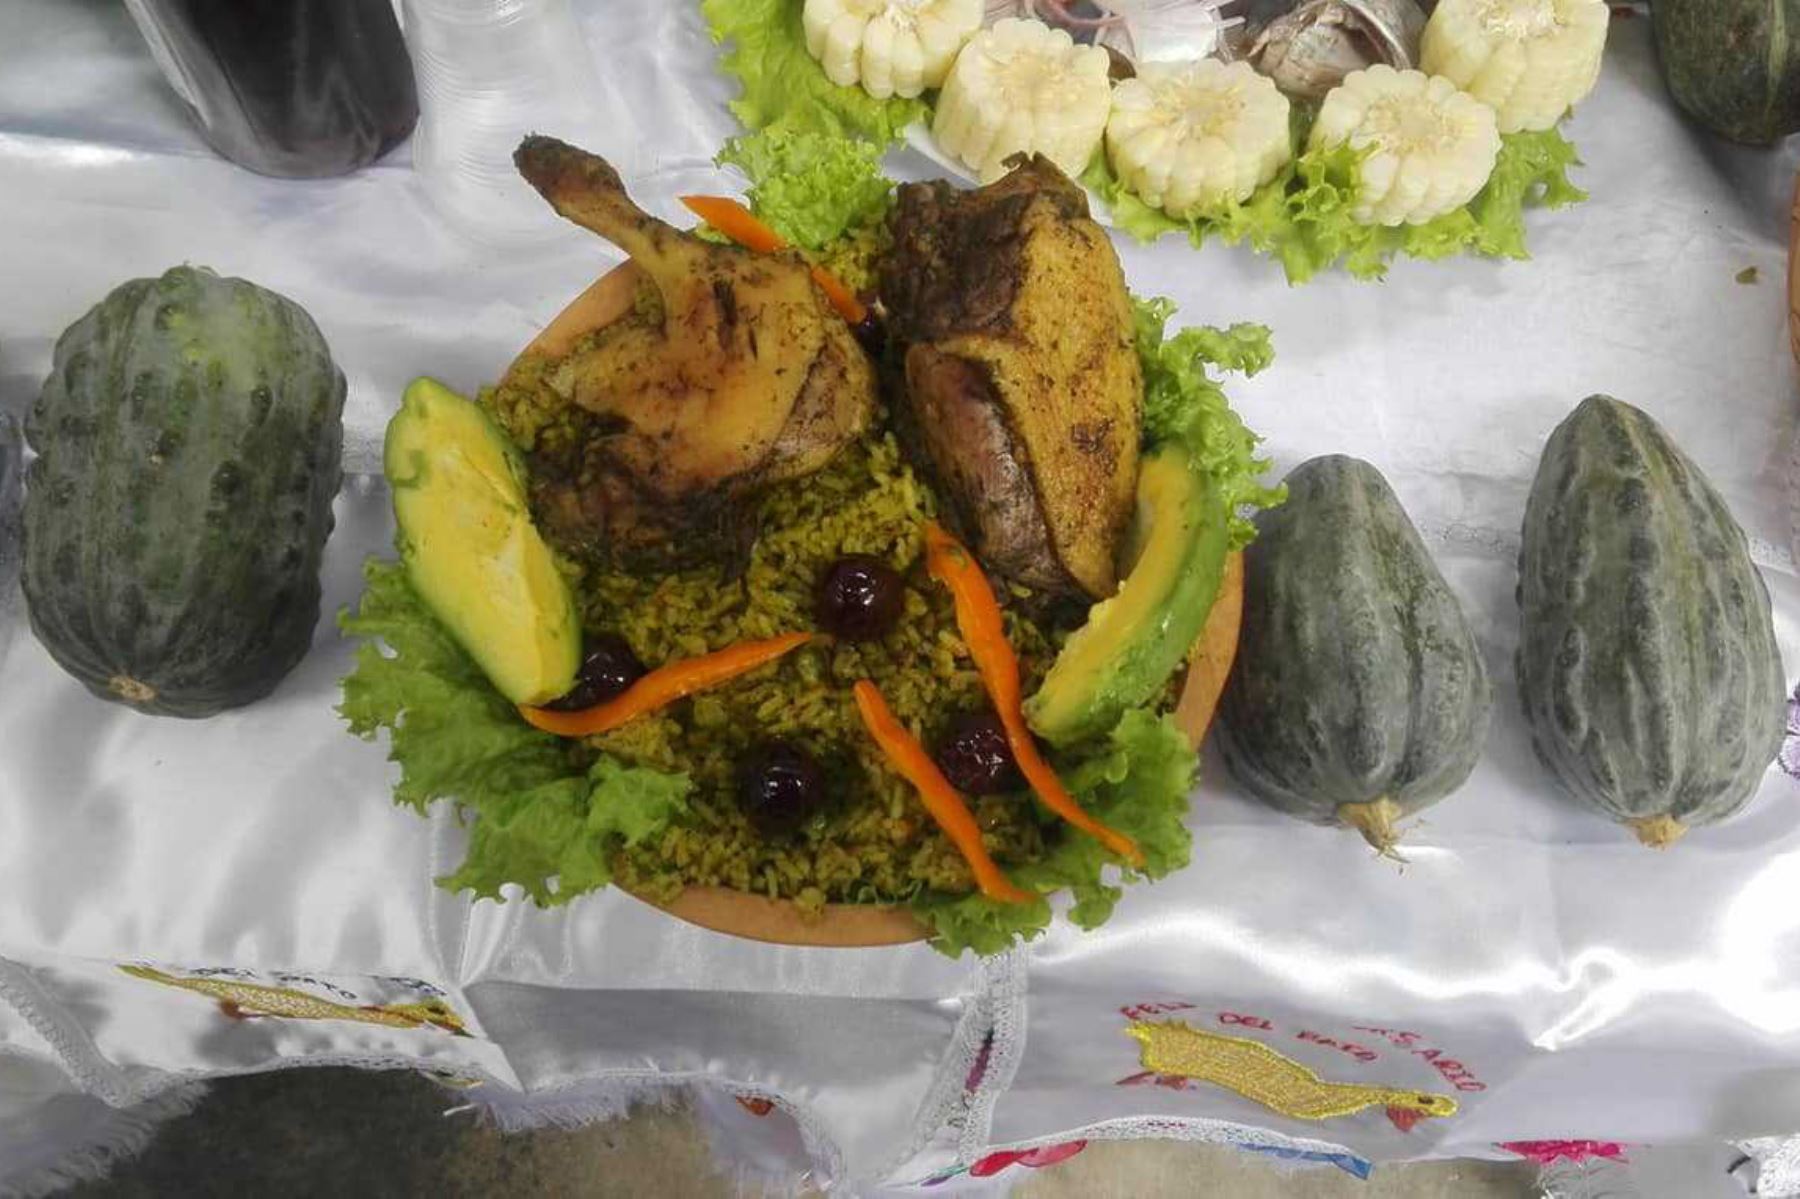 Más de 1,000 ejemplares de pato criollo se utilizarán en la preparación de 15 potajes emblemáticos durante la décima edición del Festival Gastronómico del Pato, en el centro poblado de Callanca, distrito de Monsefú, región Lambayeque.